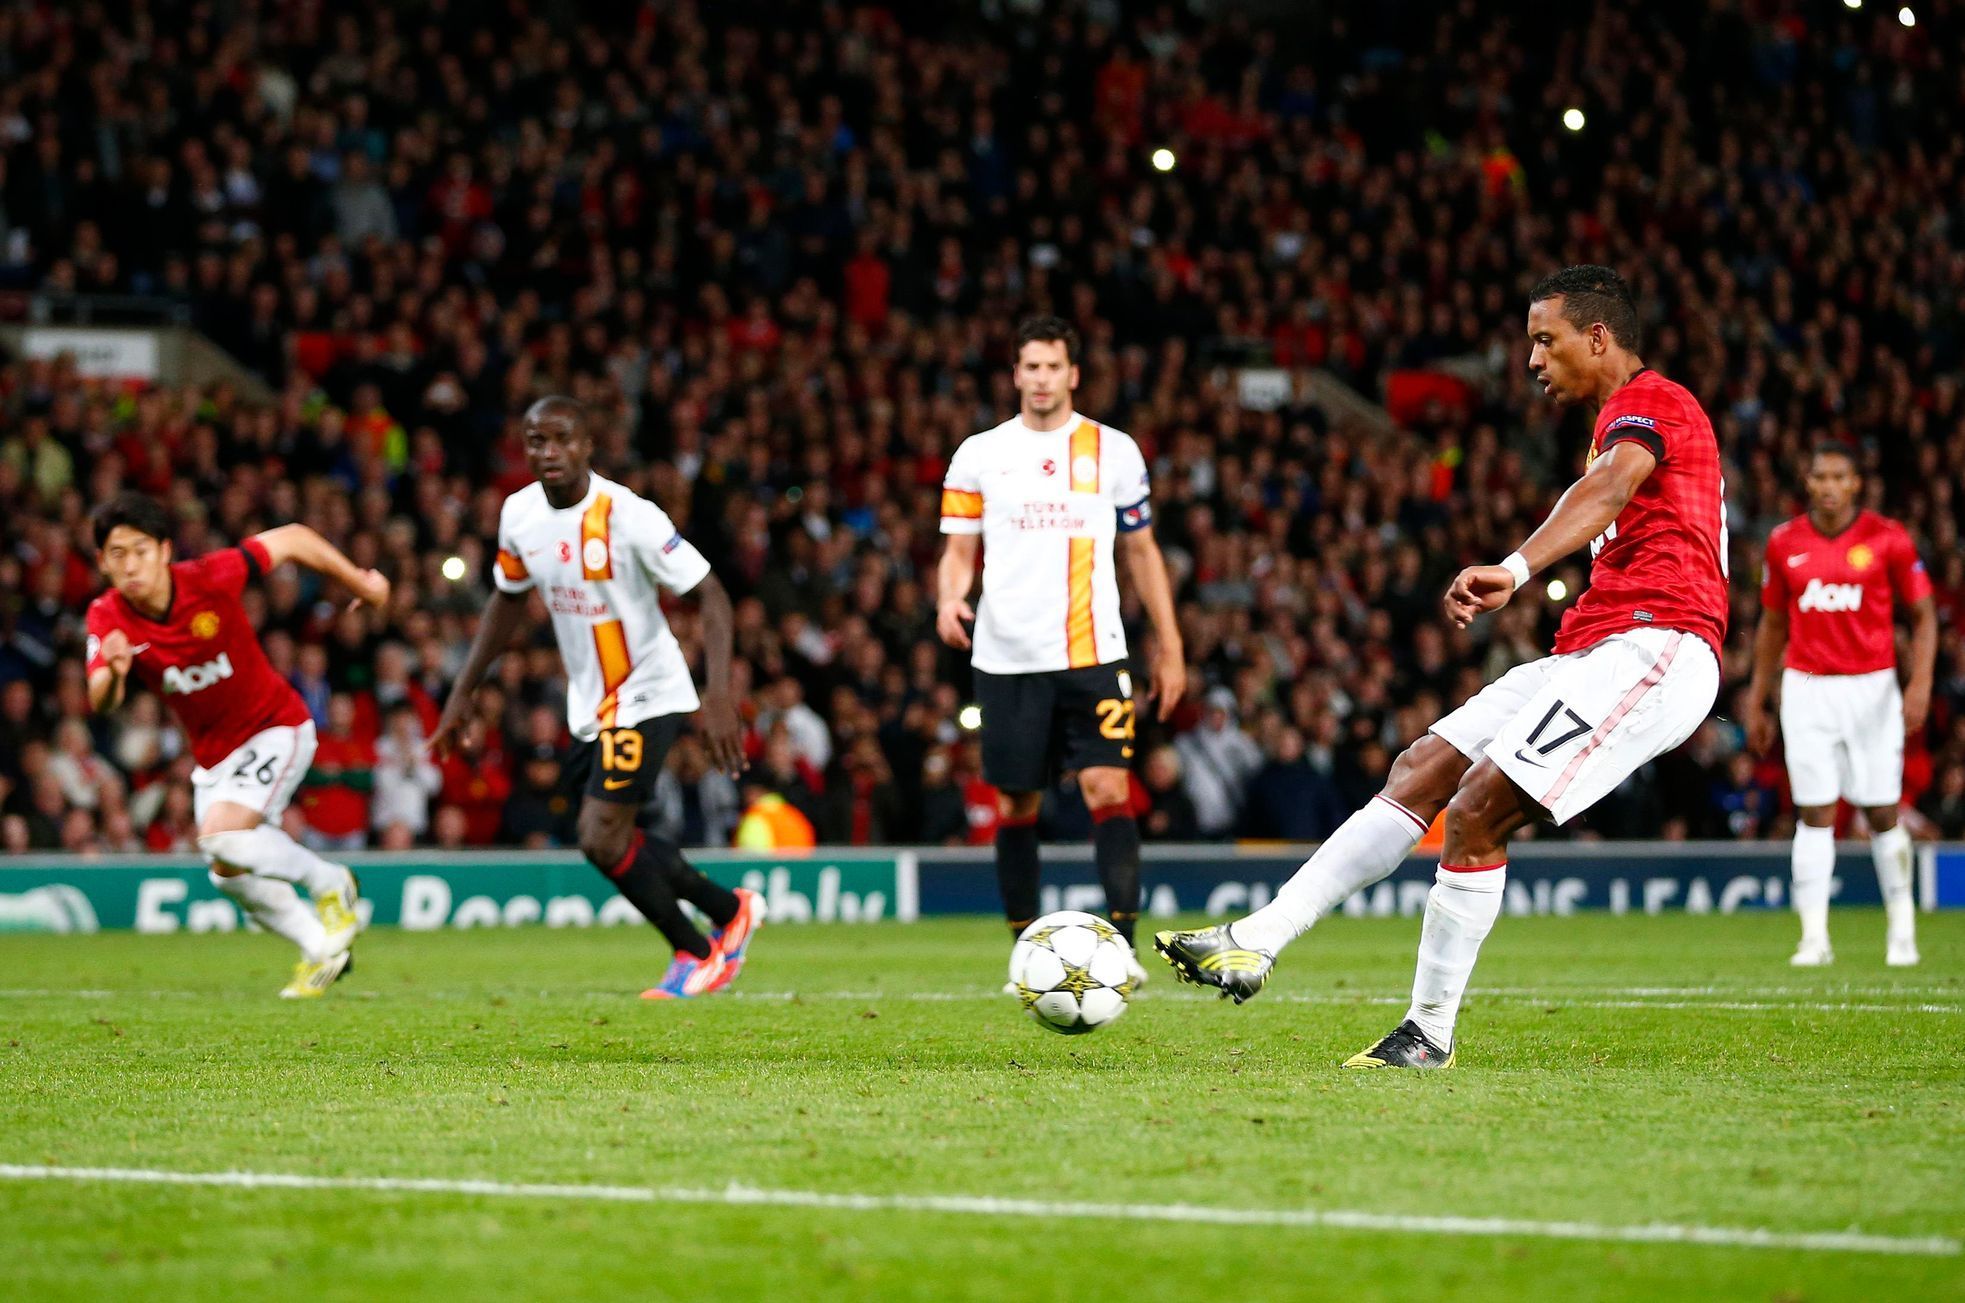 Manchester United - Galatasaray, Nani proměňuje penaltu